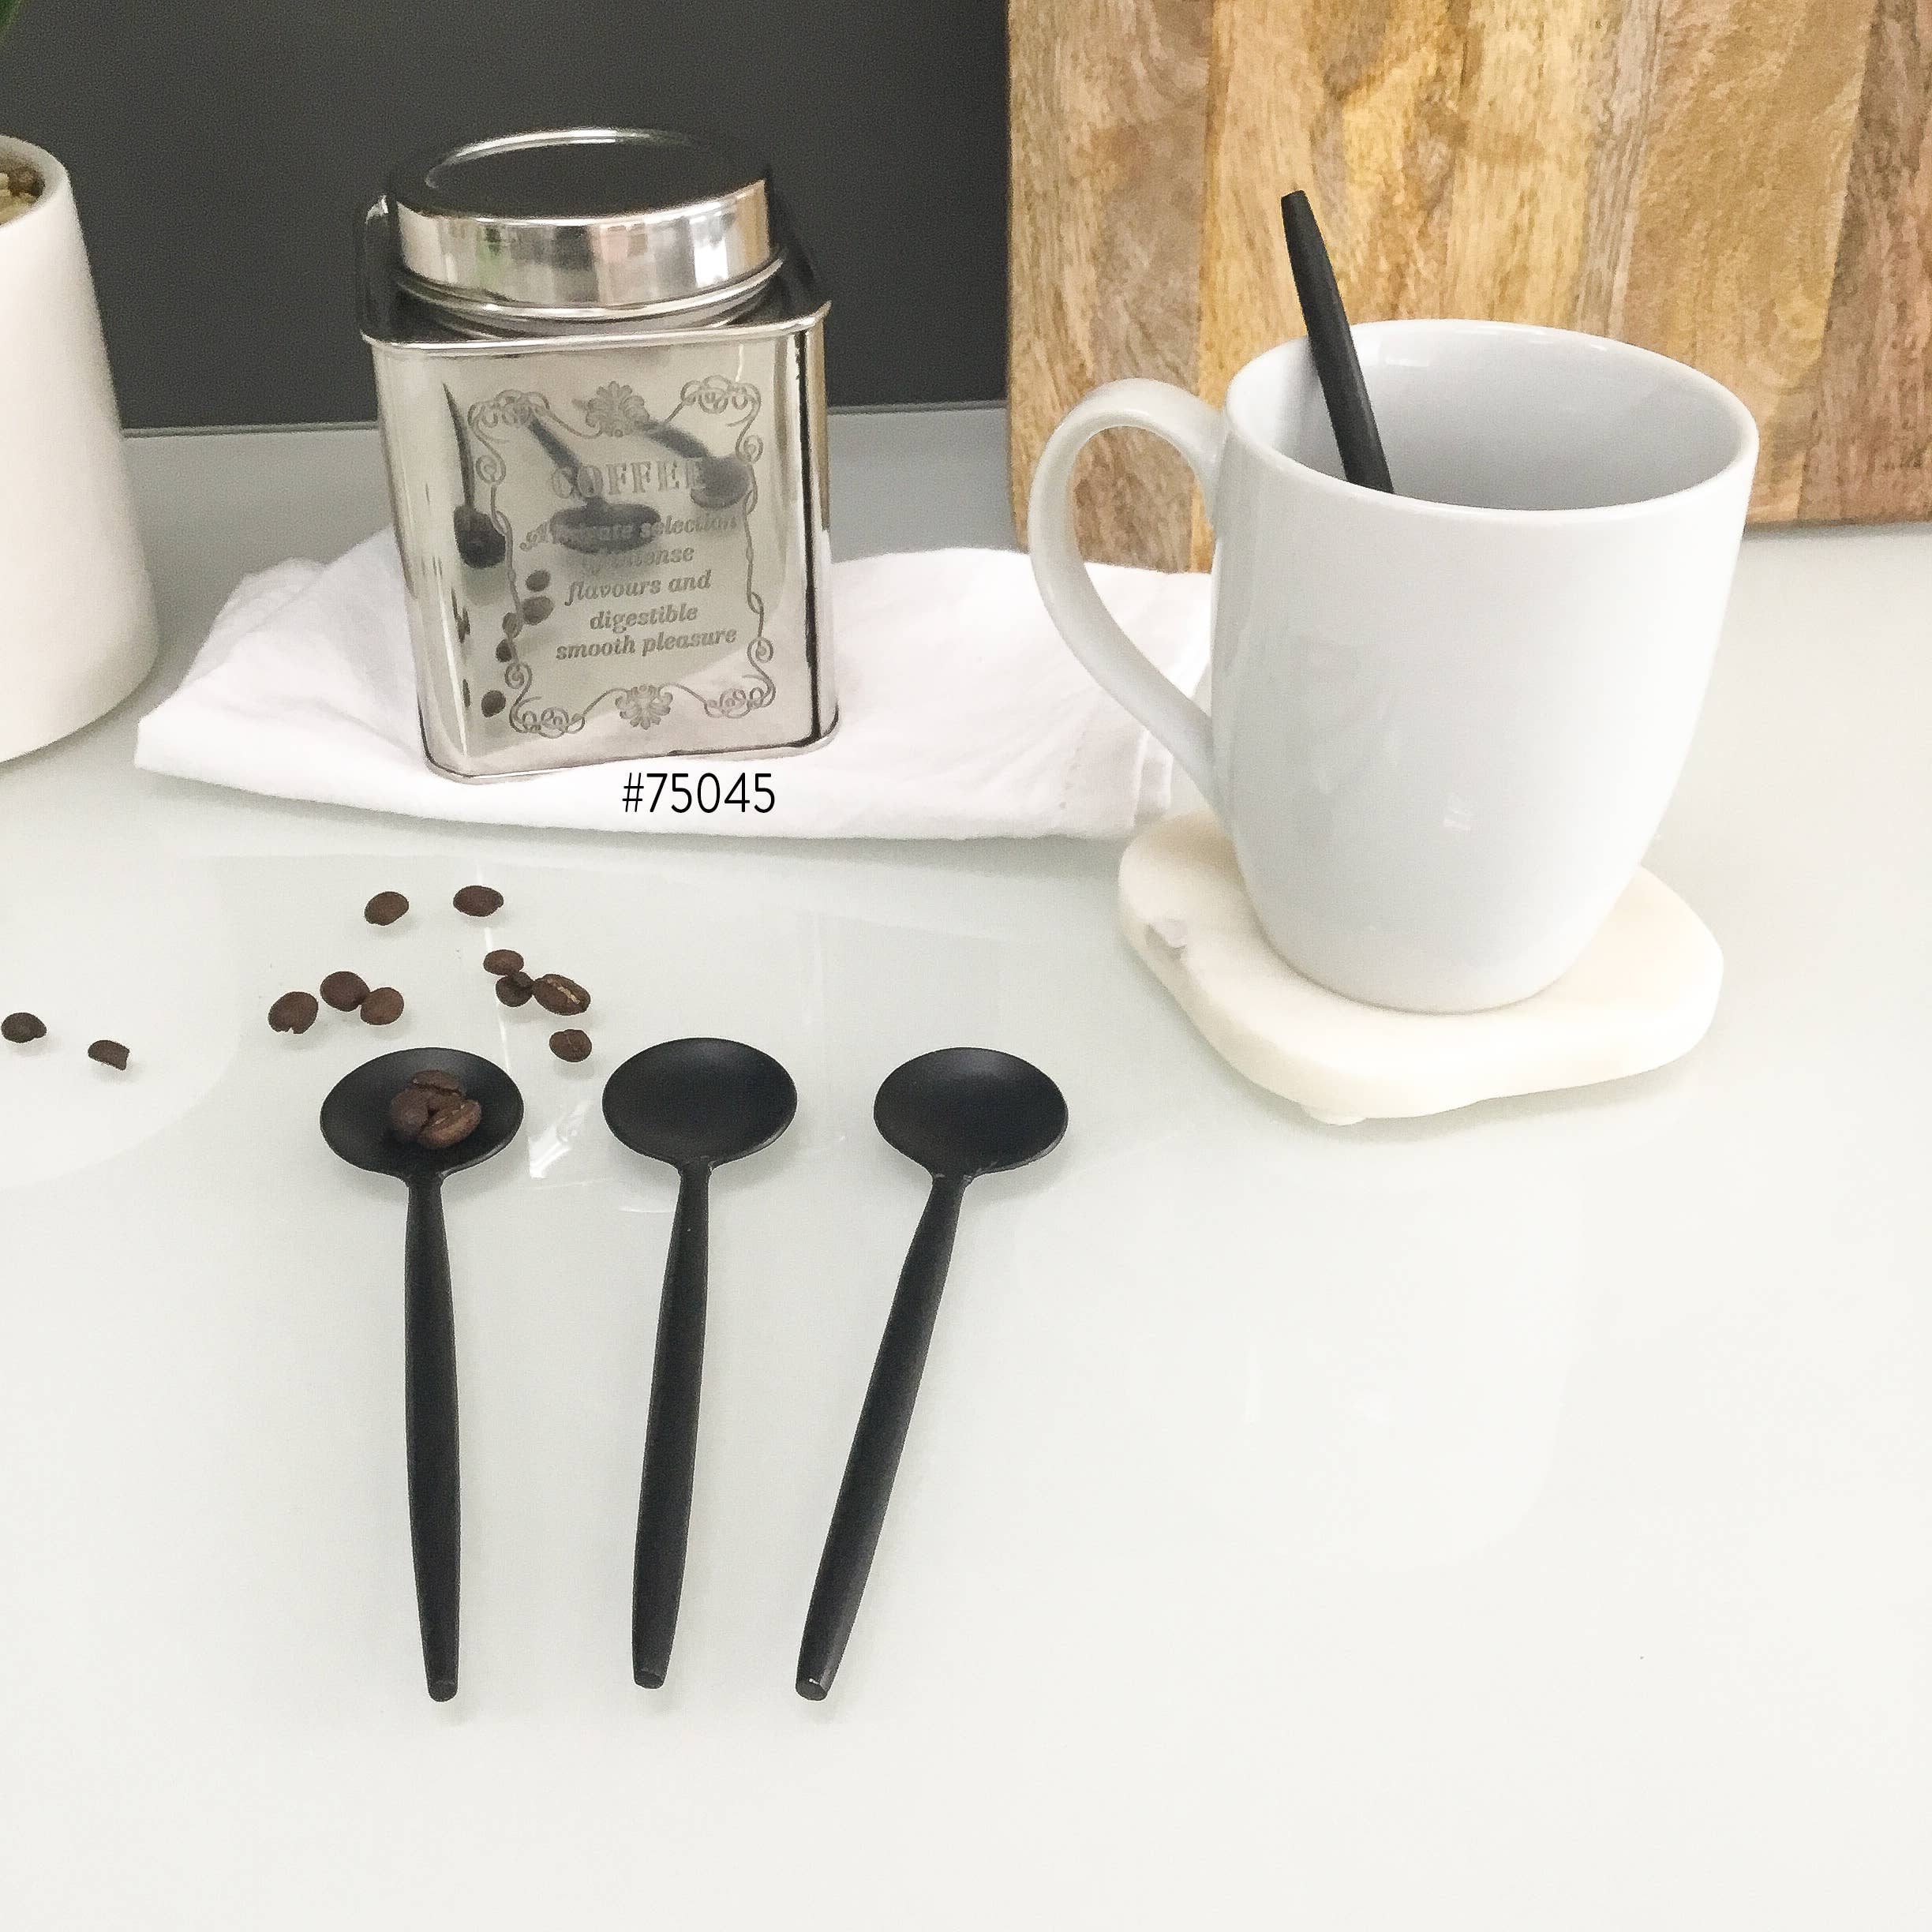 Sleek Black Coffee Spoons